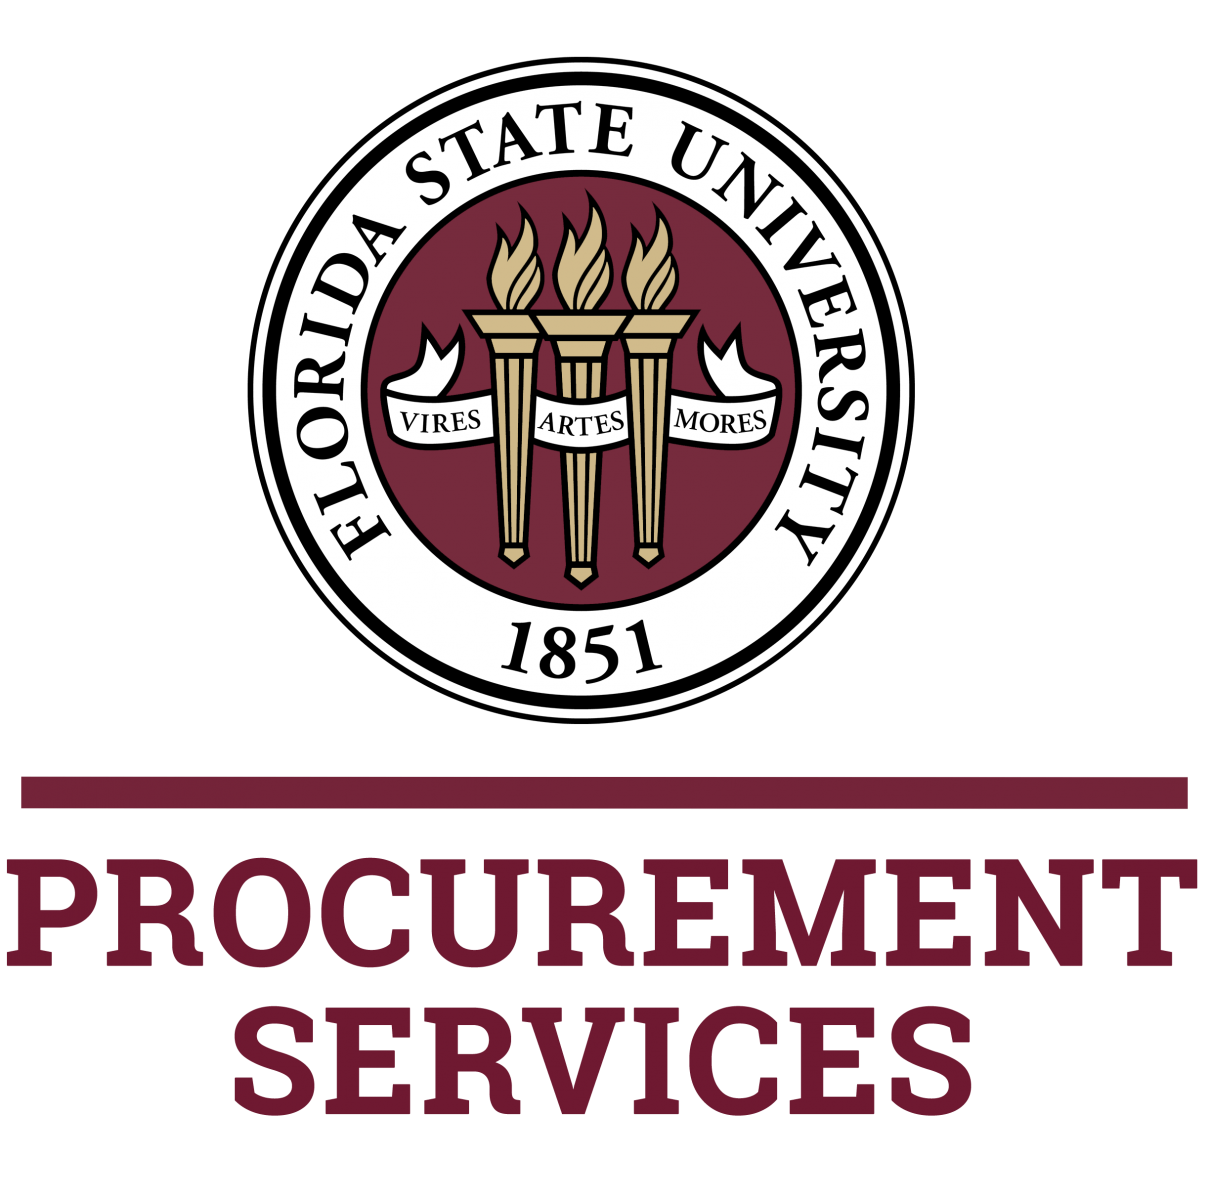 Procurement Services Seal